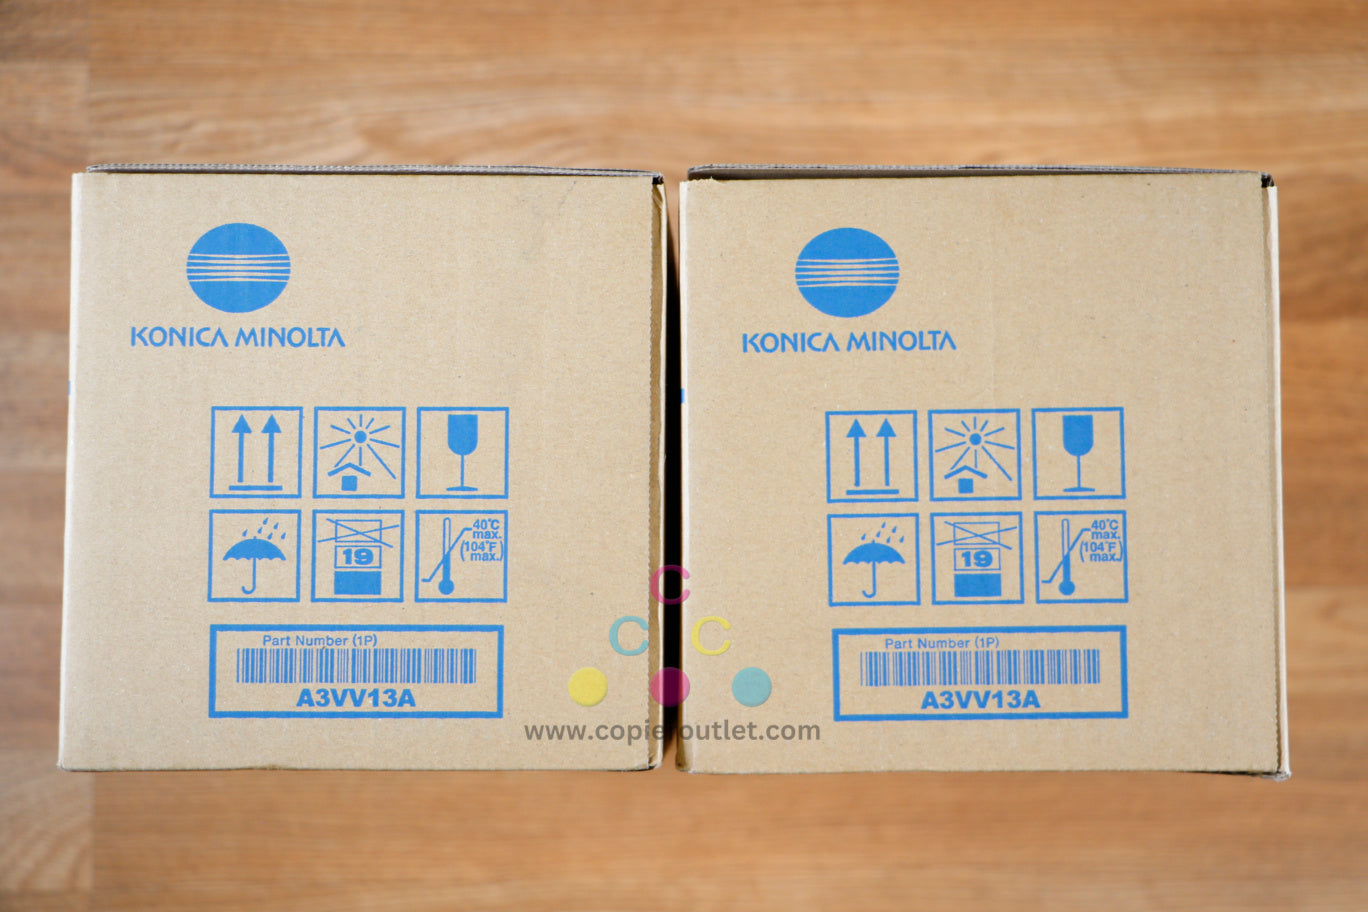 Lot of 2 Konica Minolta TN014H K Toner Cartridges BizHub PRESS 1052/1250/1250P!!